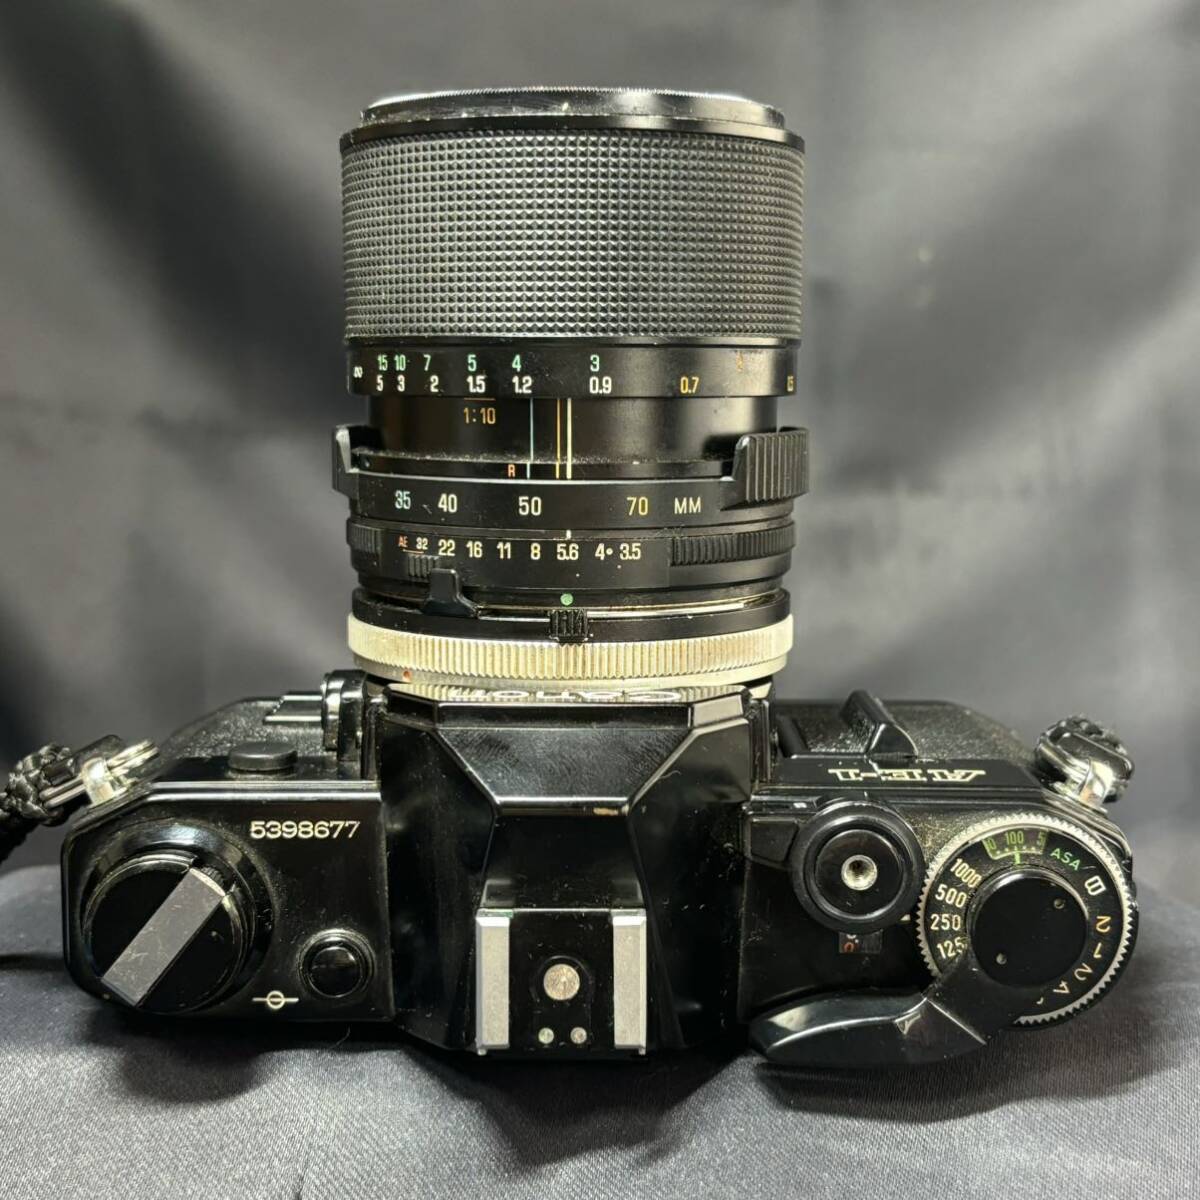 Canon キャノン AE-1 一眼レフ フィルムカメラ/カメラレンズ TAMRON 35-70mm 1:3.5 ボディ ブラック 動作未確認の画像4